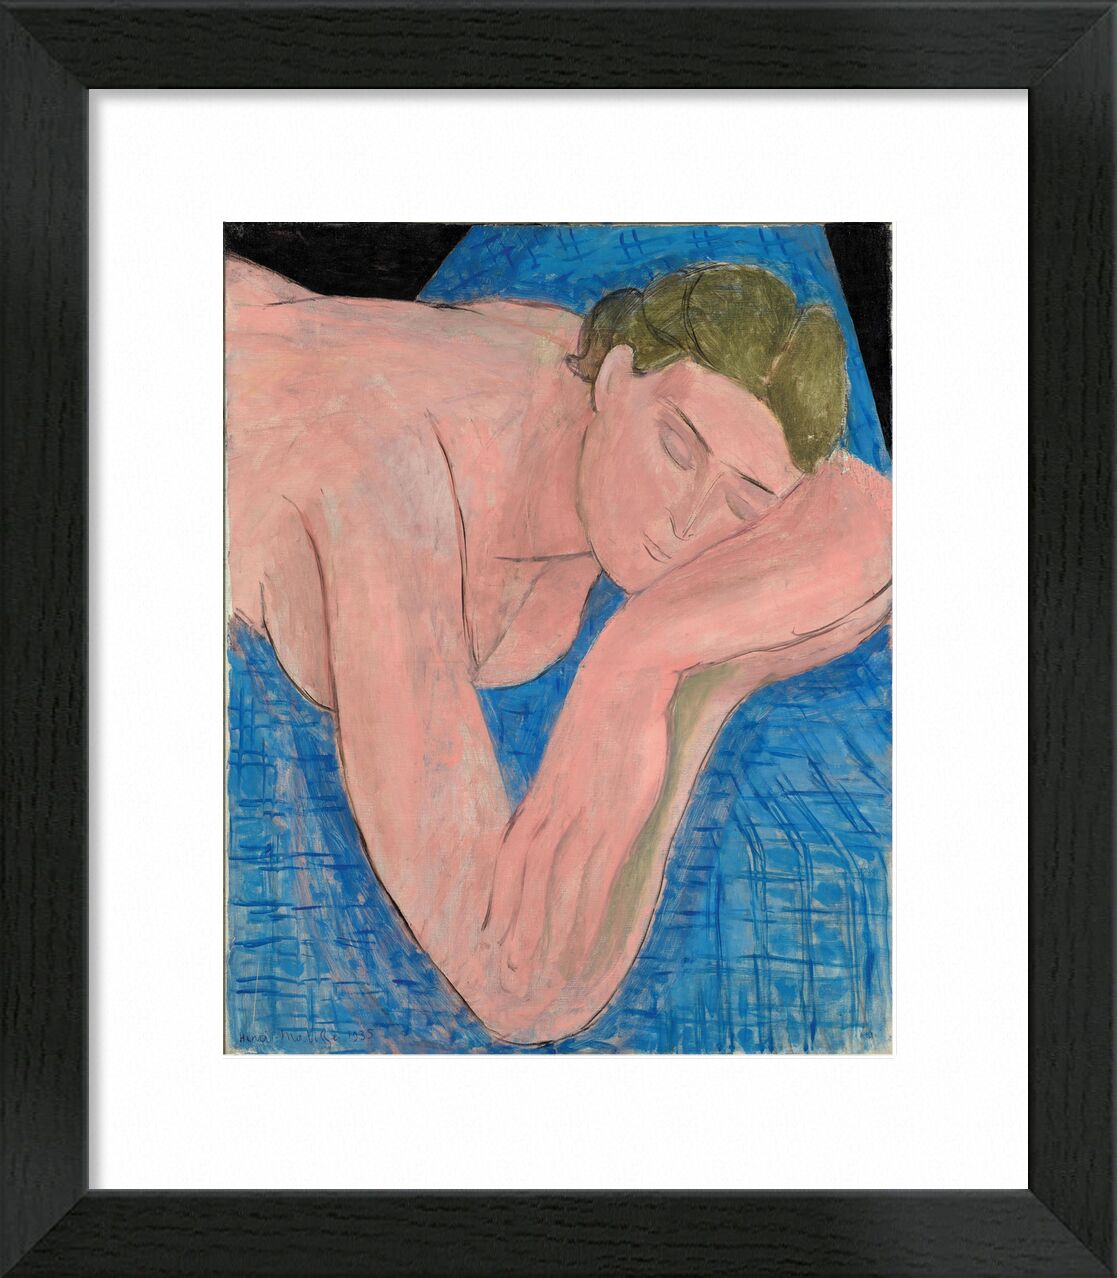 Der Traum - Matisse von Bildende Kunst, Prodi Art, Henri Matisse, Matisse, schlafen, Schlaf, nackt, Mann, Traum, Siesta